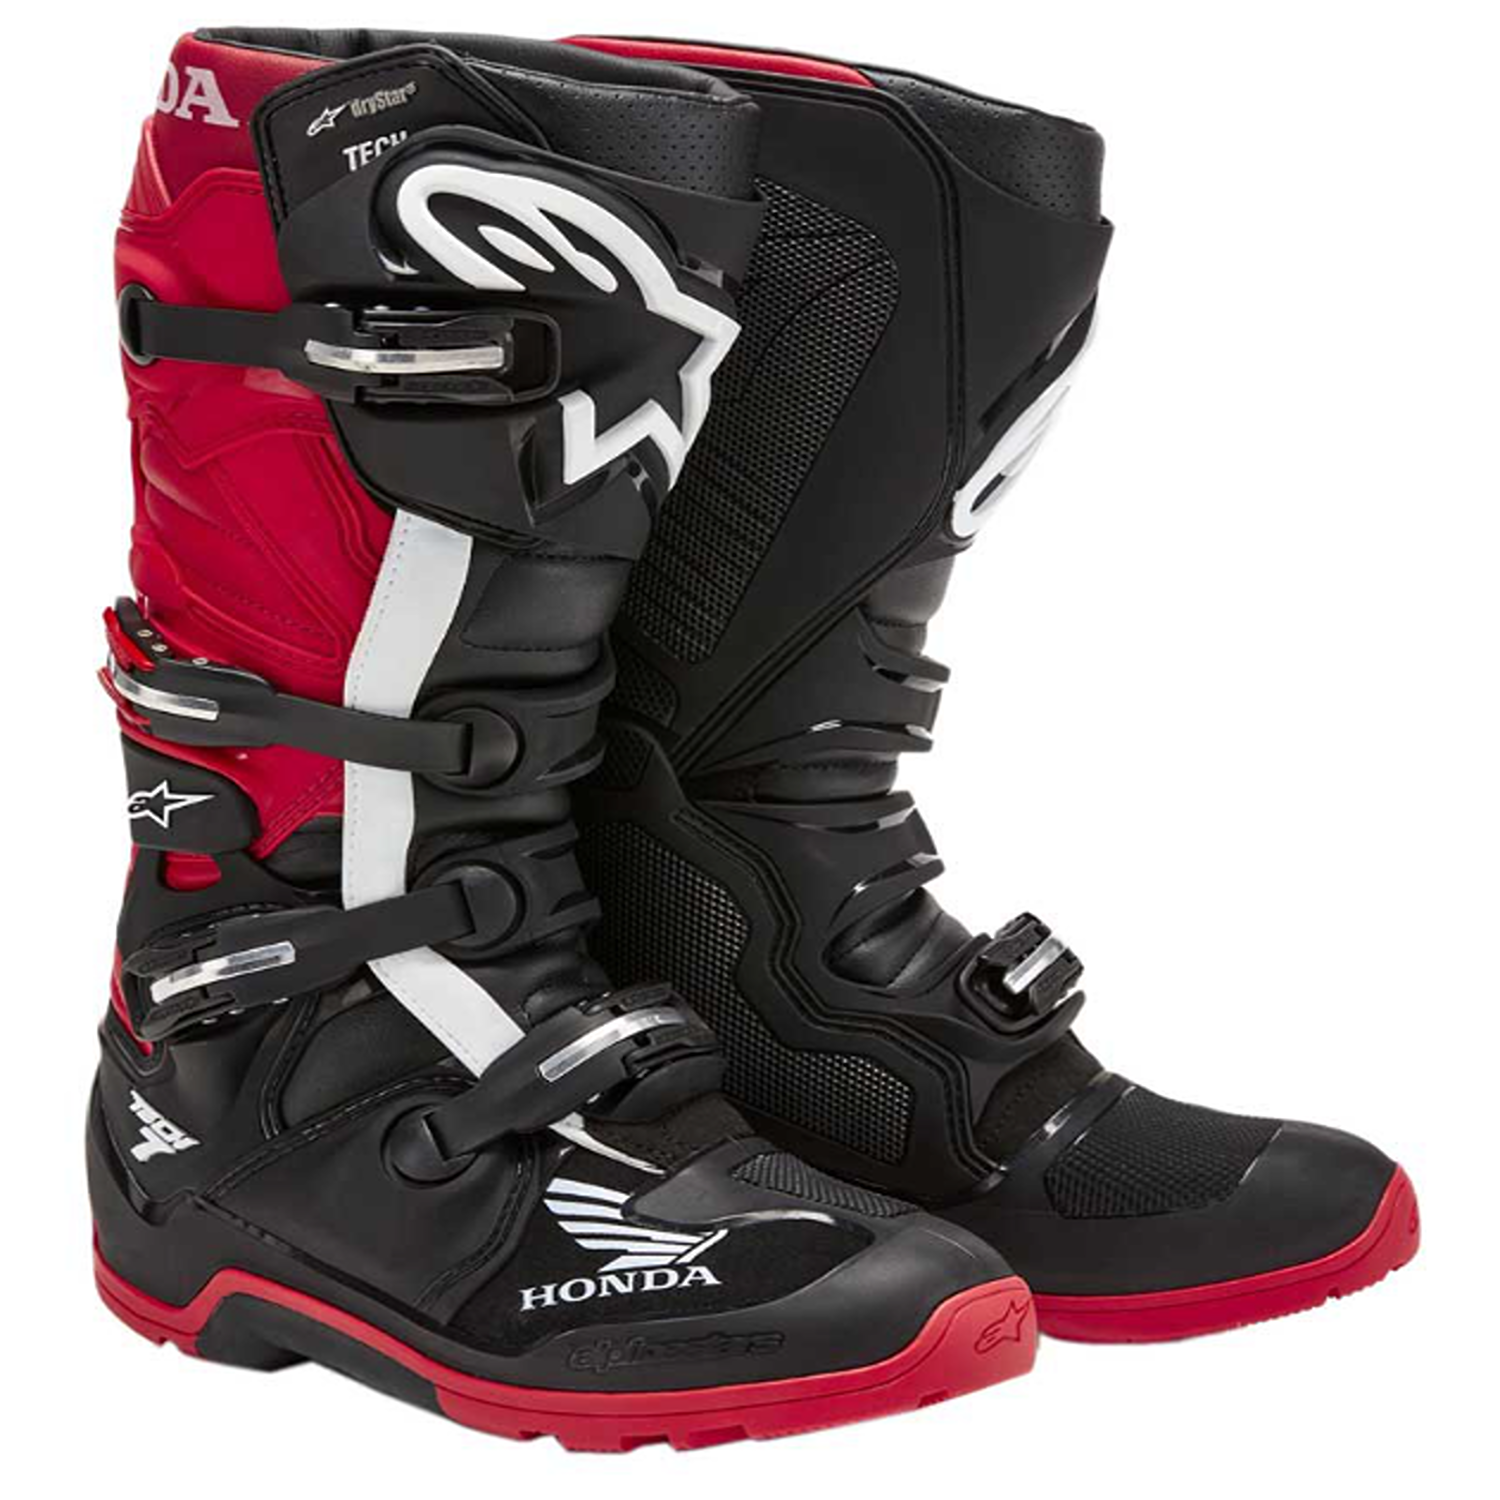 Image of Alpinestars Honda Tech 7 Enduro Drystar Boots Black Bright Red Size US 11 EN